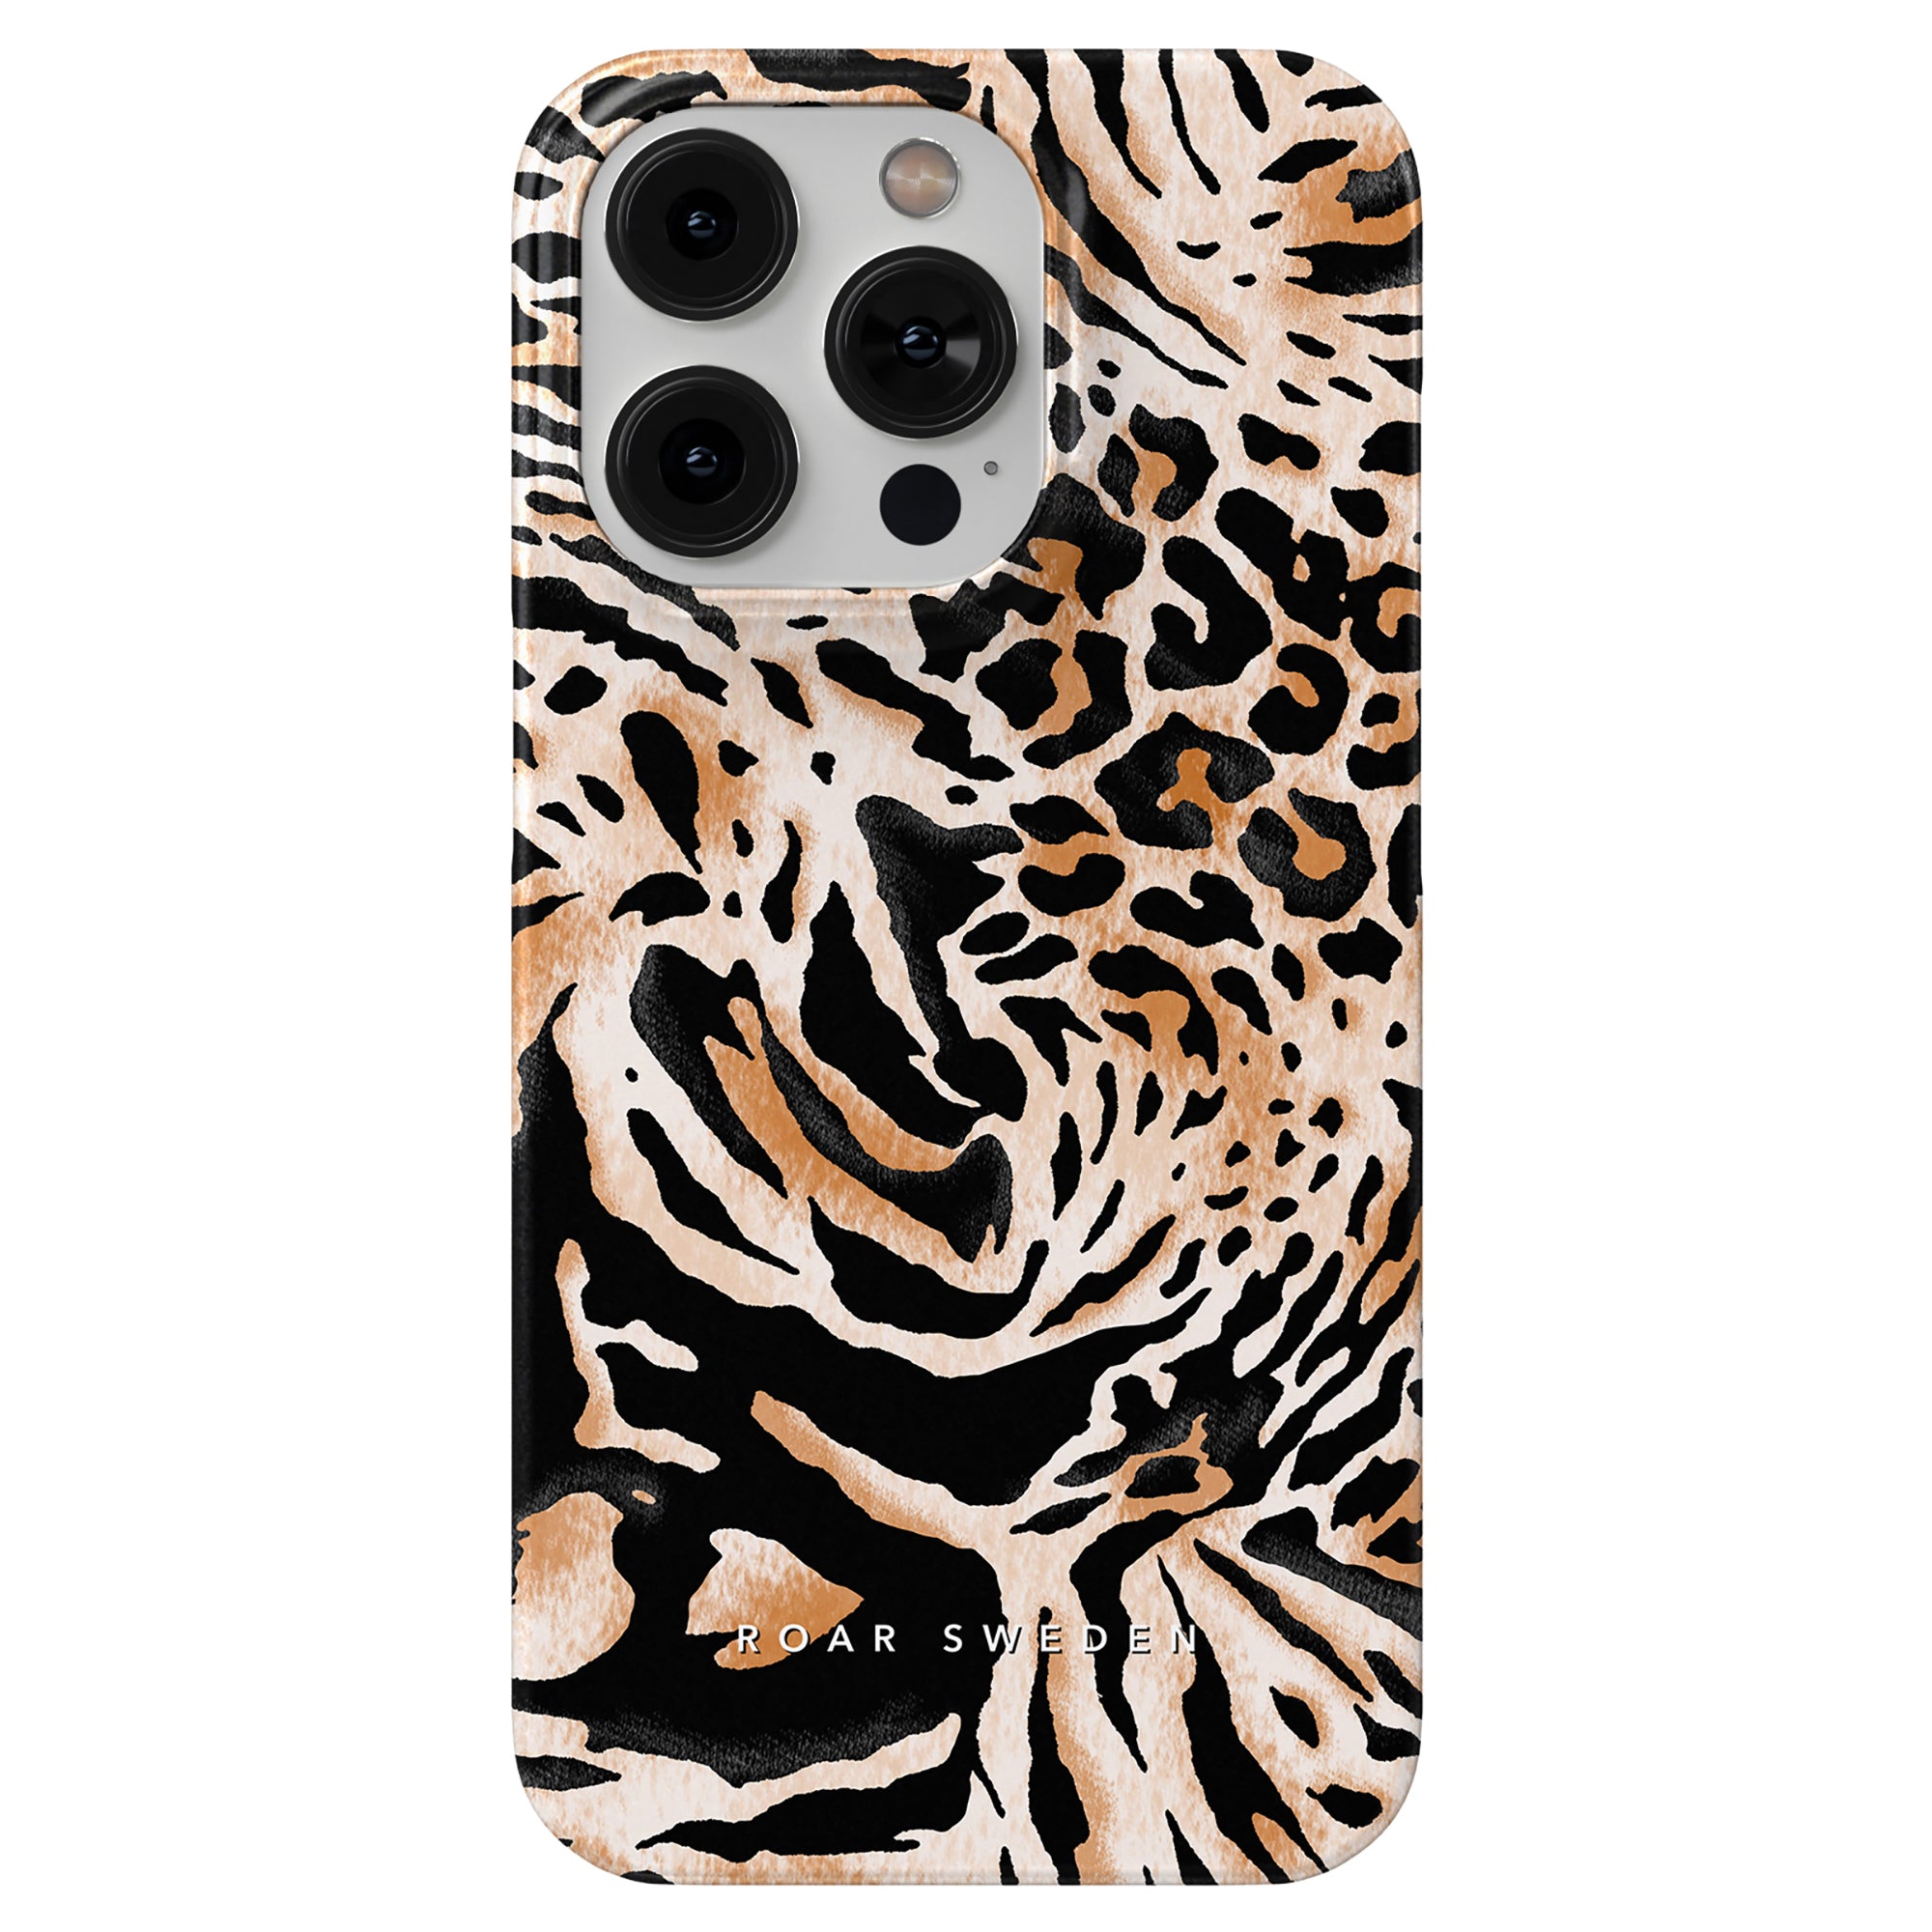 Ett Printeers Panthera Slim-fodral med leopardmönster för smartphoneskydd på iPhone 11.